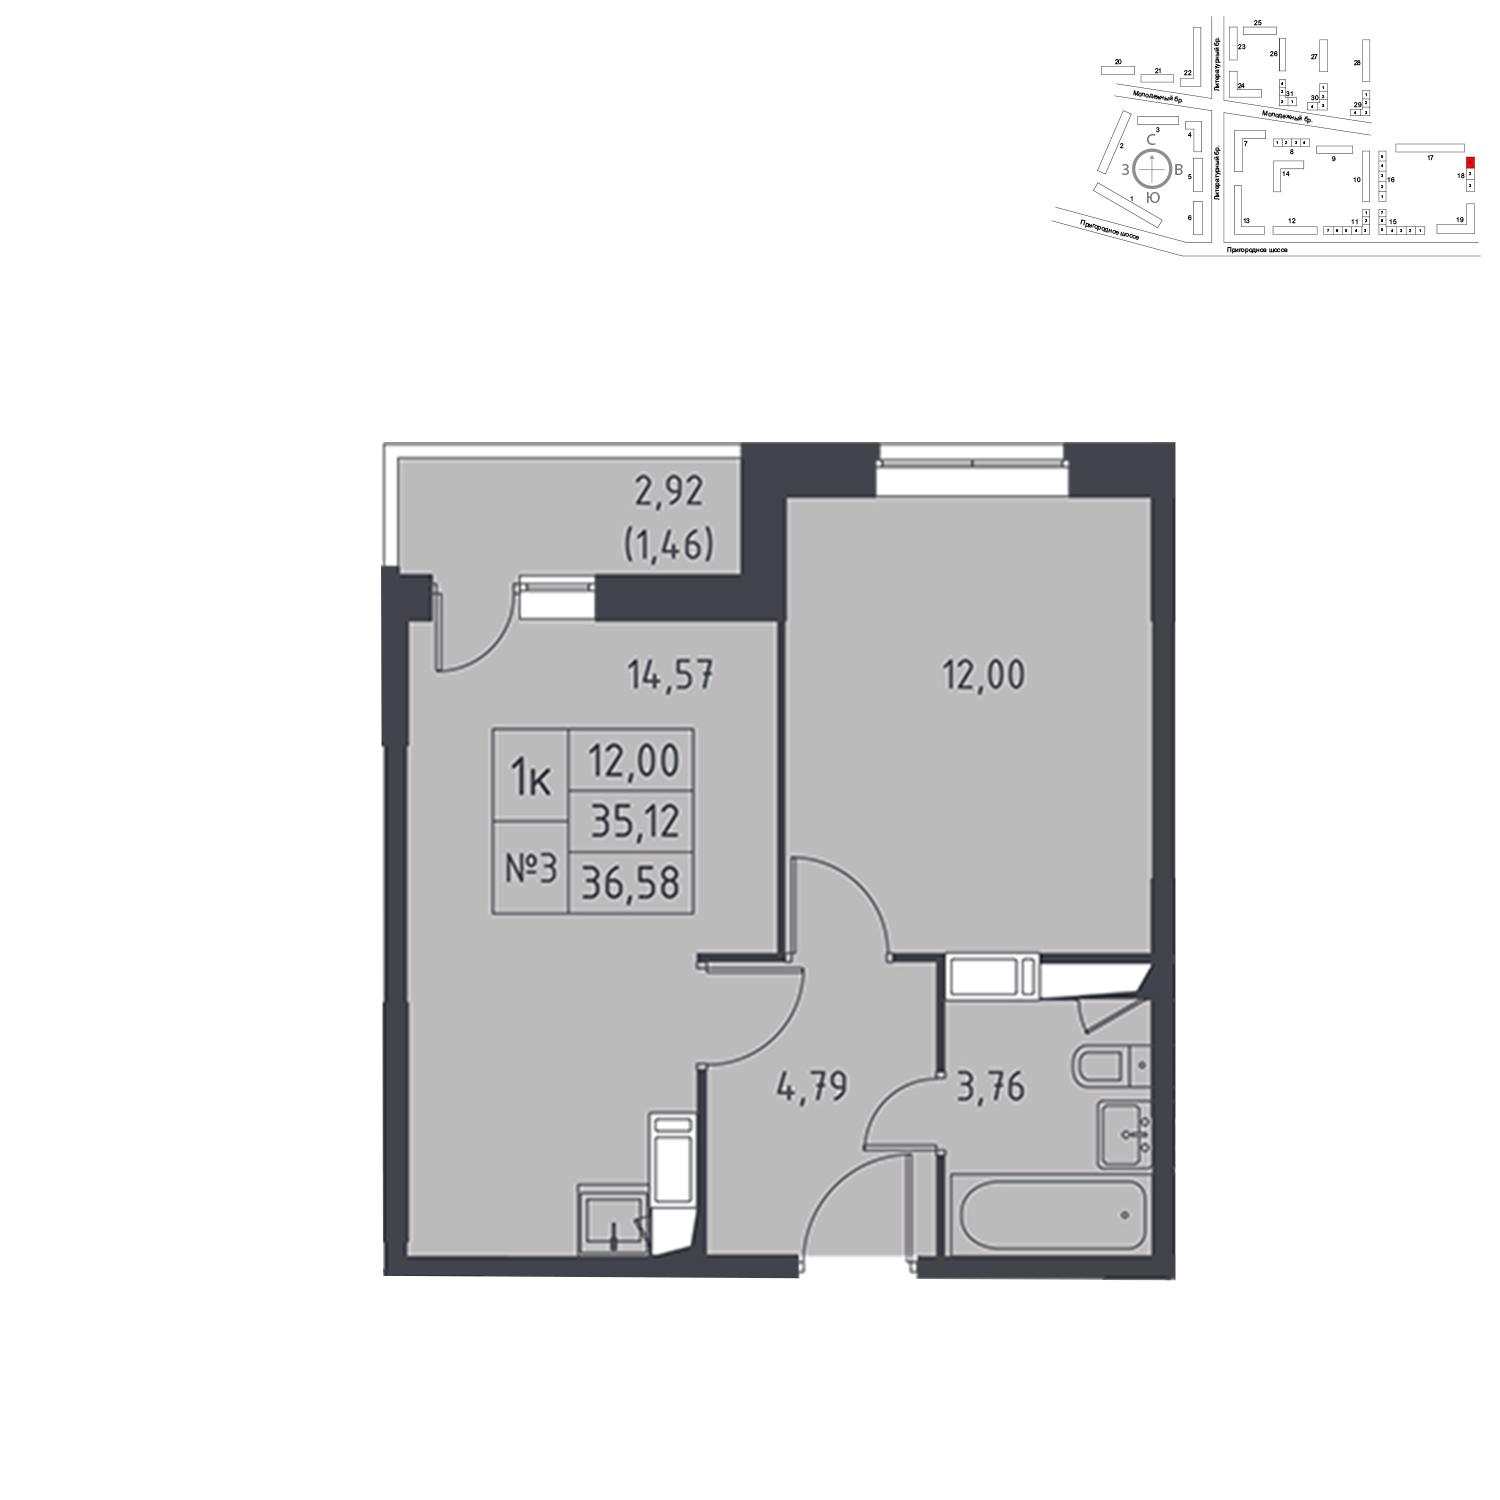 Продаётся 1-комнатная квартира в новостройке 36.6 кв.м. этаж 13/17 за 3 713 089 руб 